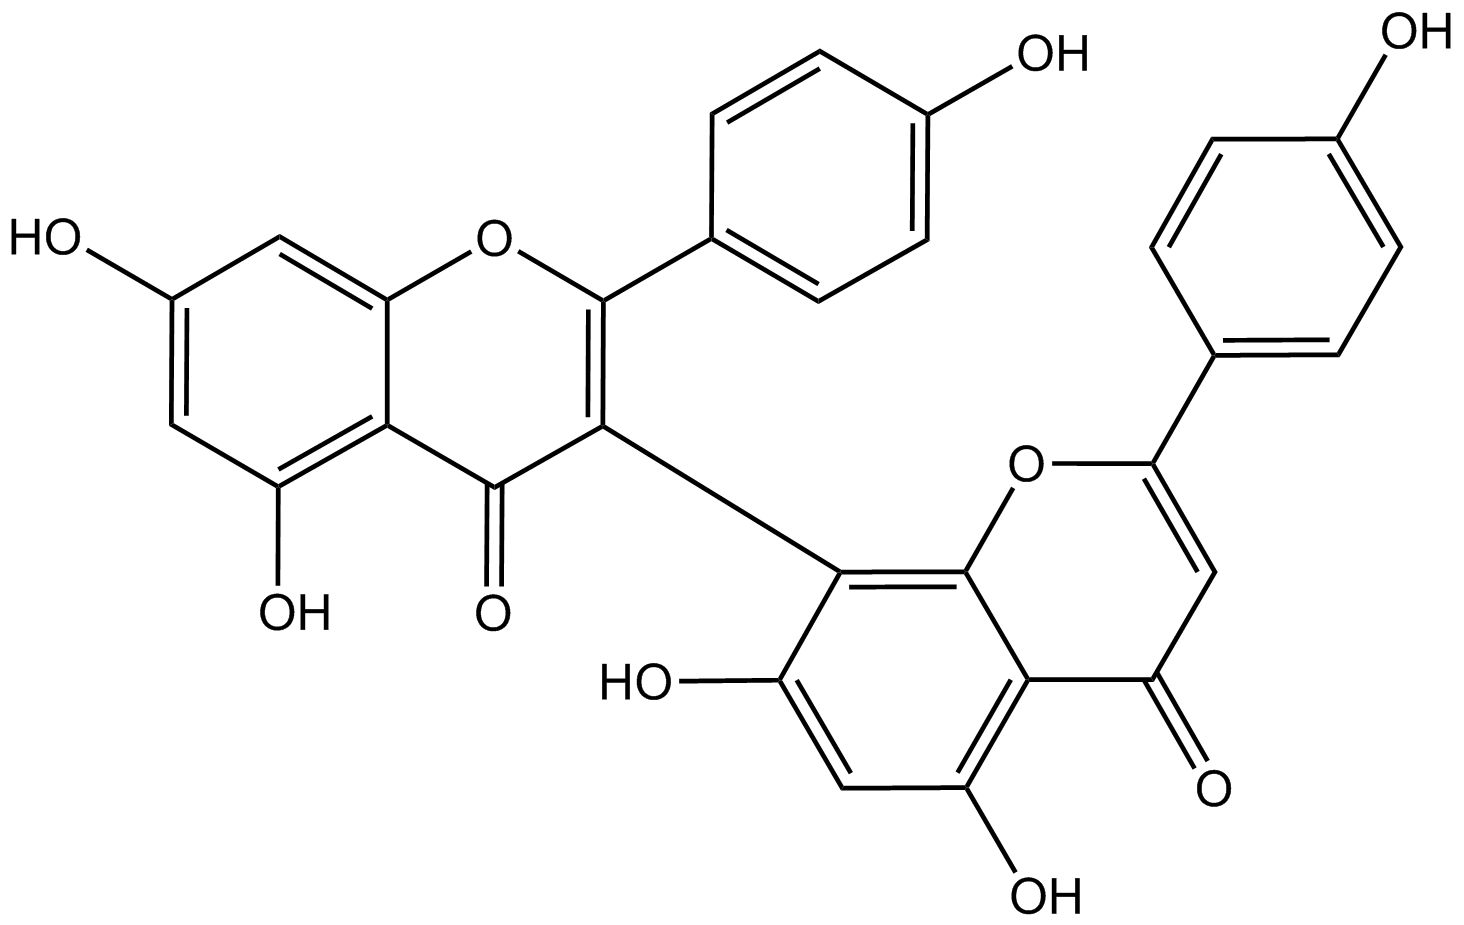 I3,II8-Biapigenin phyproof® Reference Substance | PhytoLab